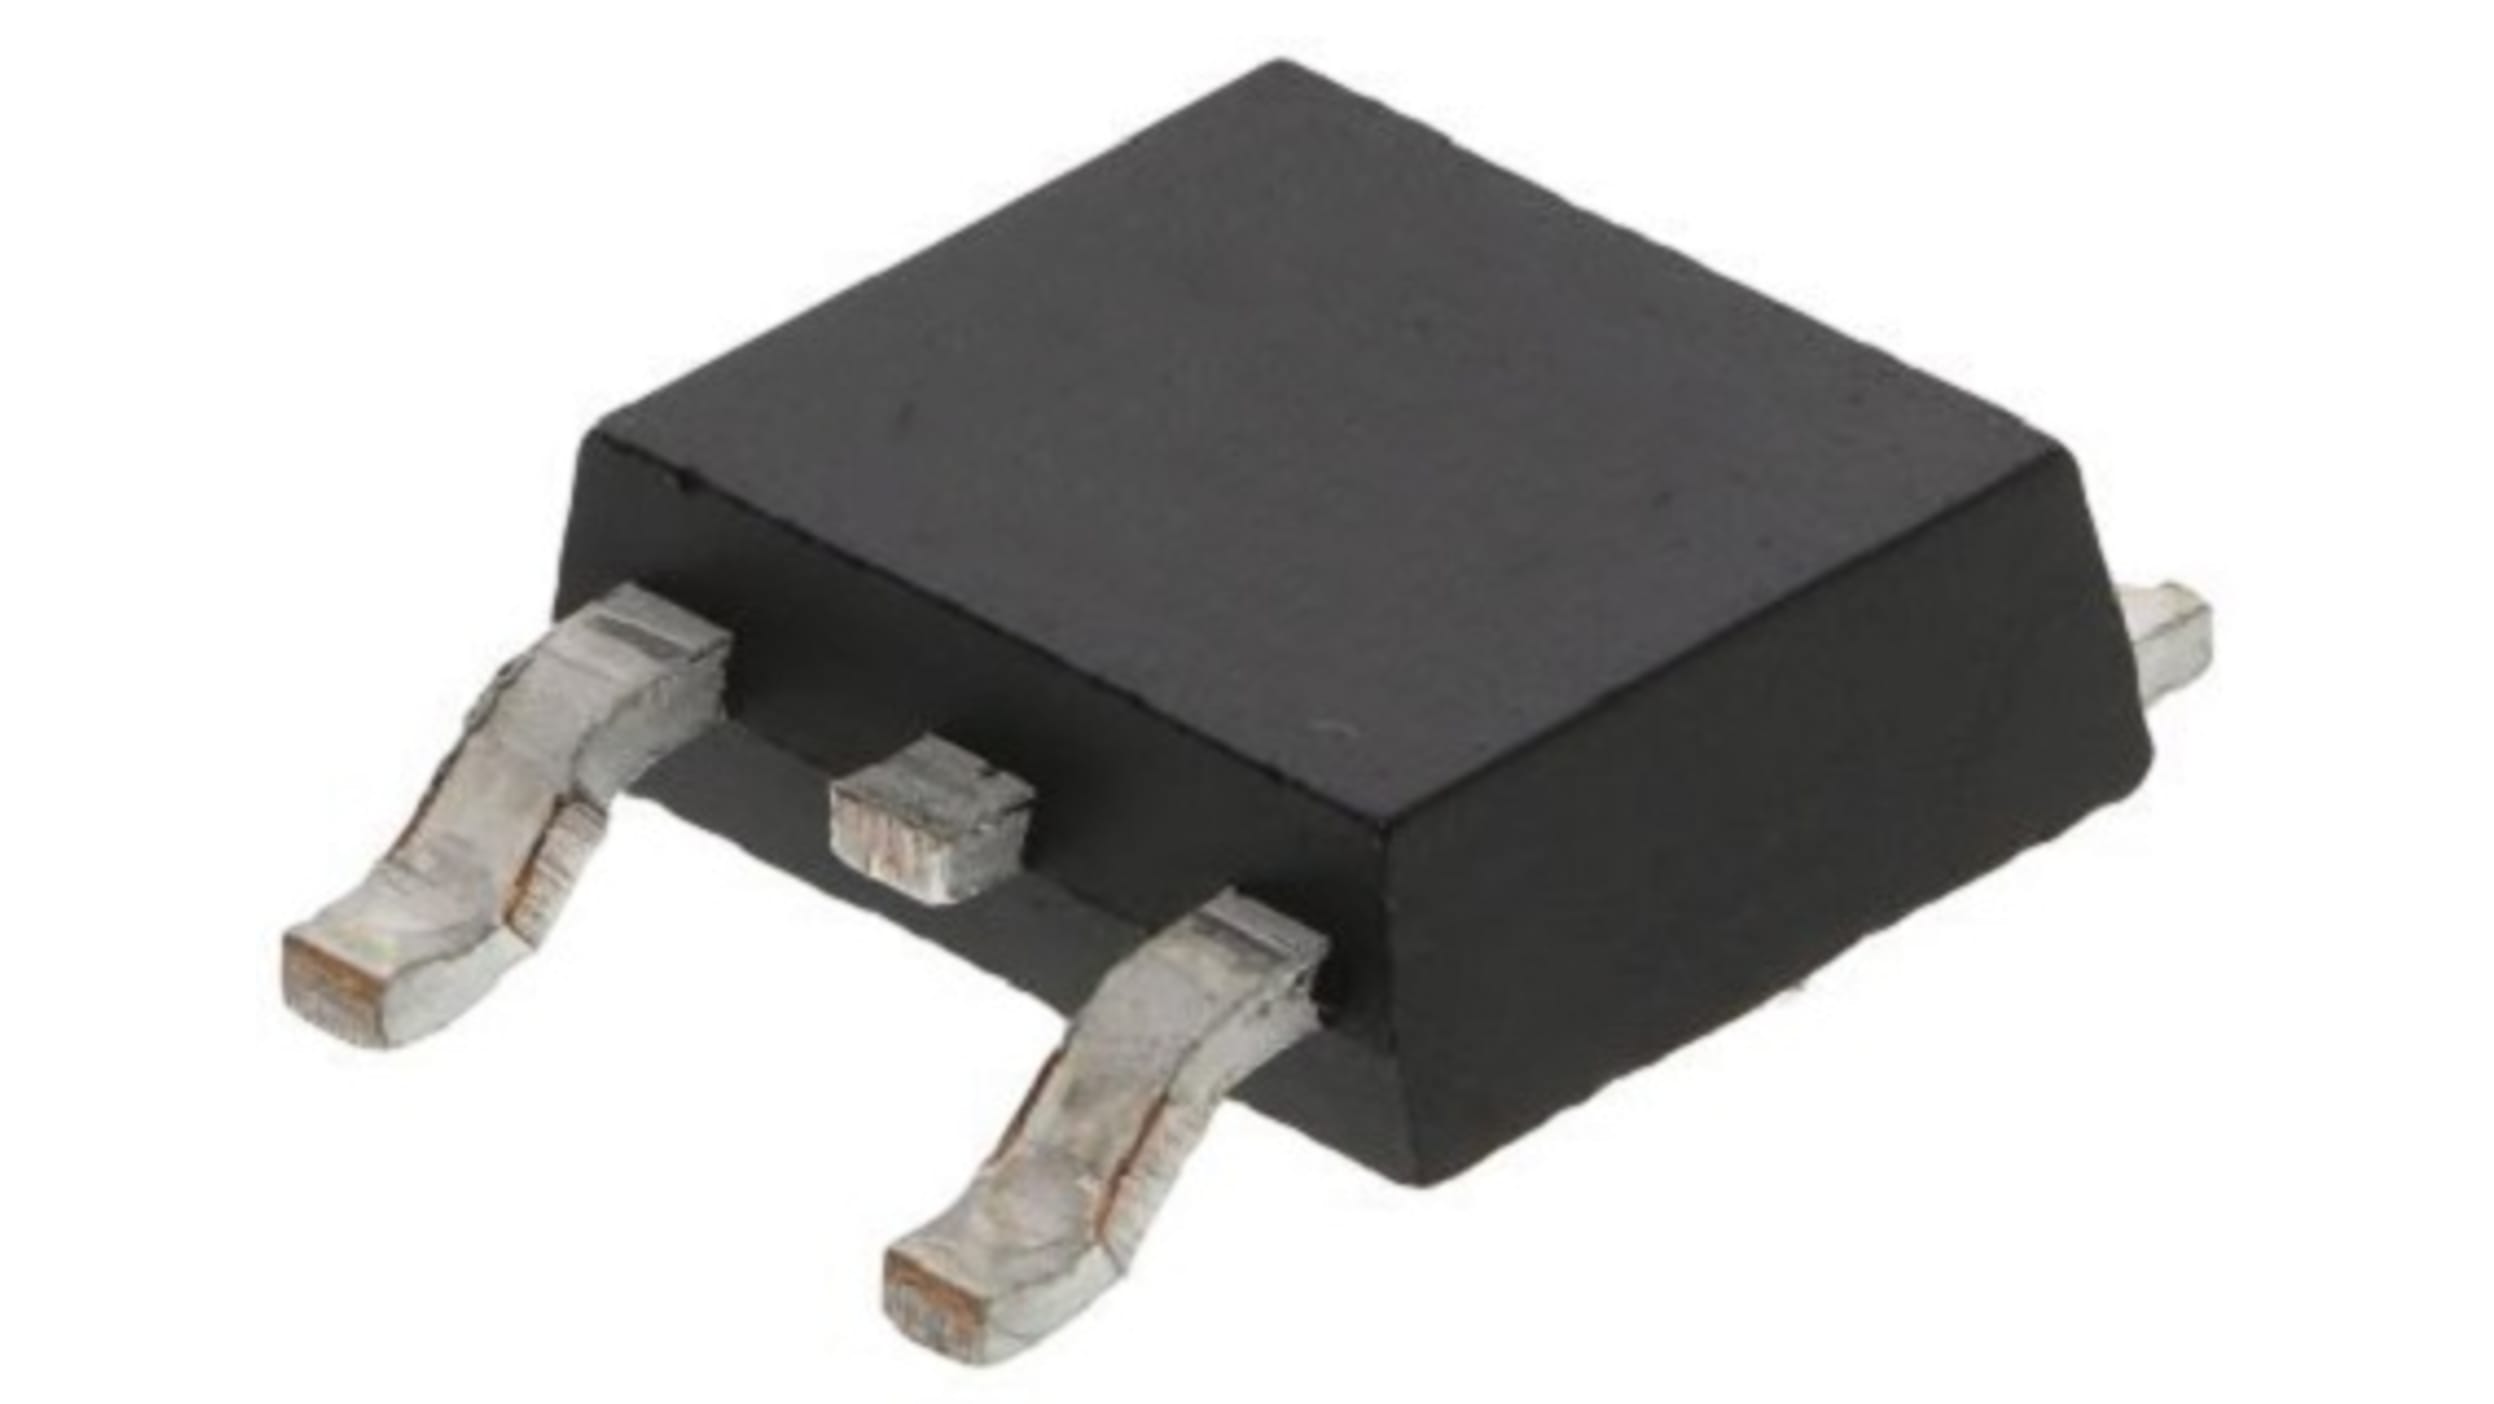 日清紡マイクロデバイス LOD電圧レギュレータ リニア電圧 短絡保護、熱的過負荷保護 12 V